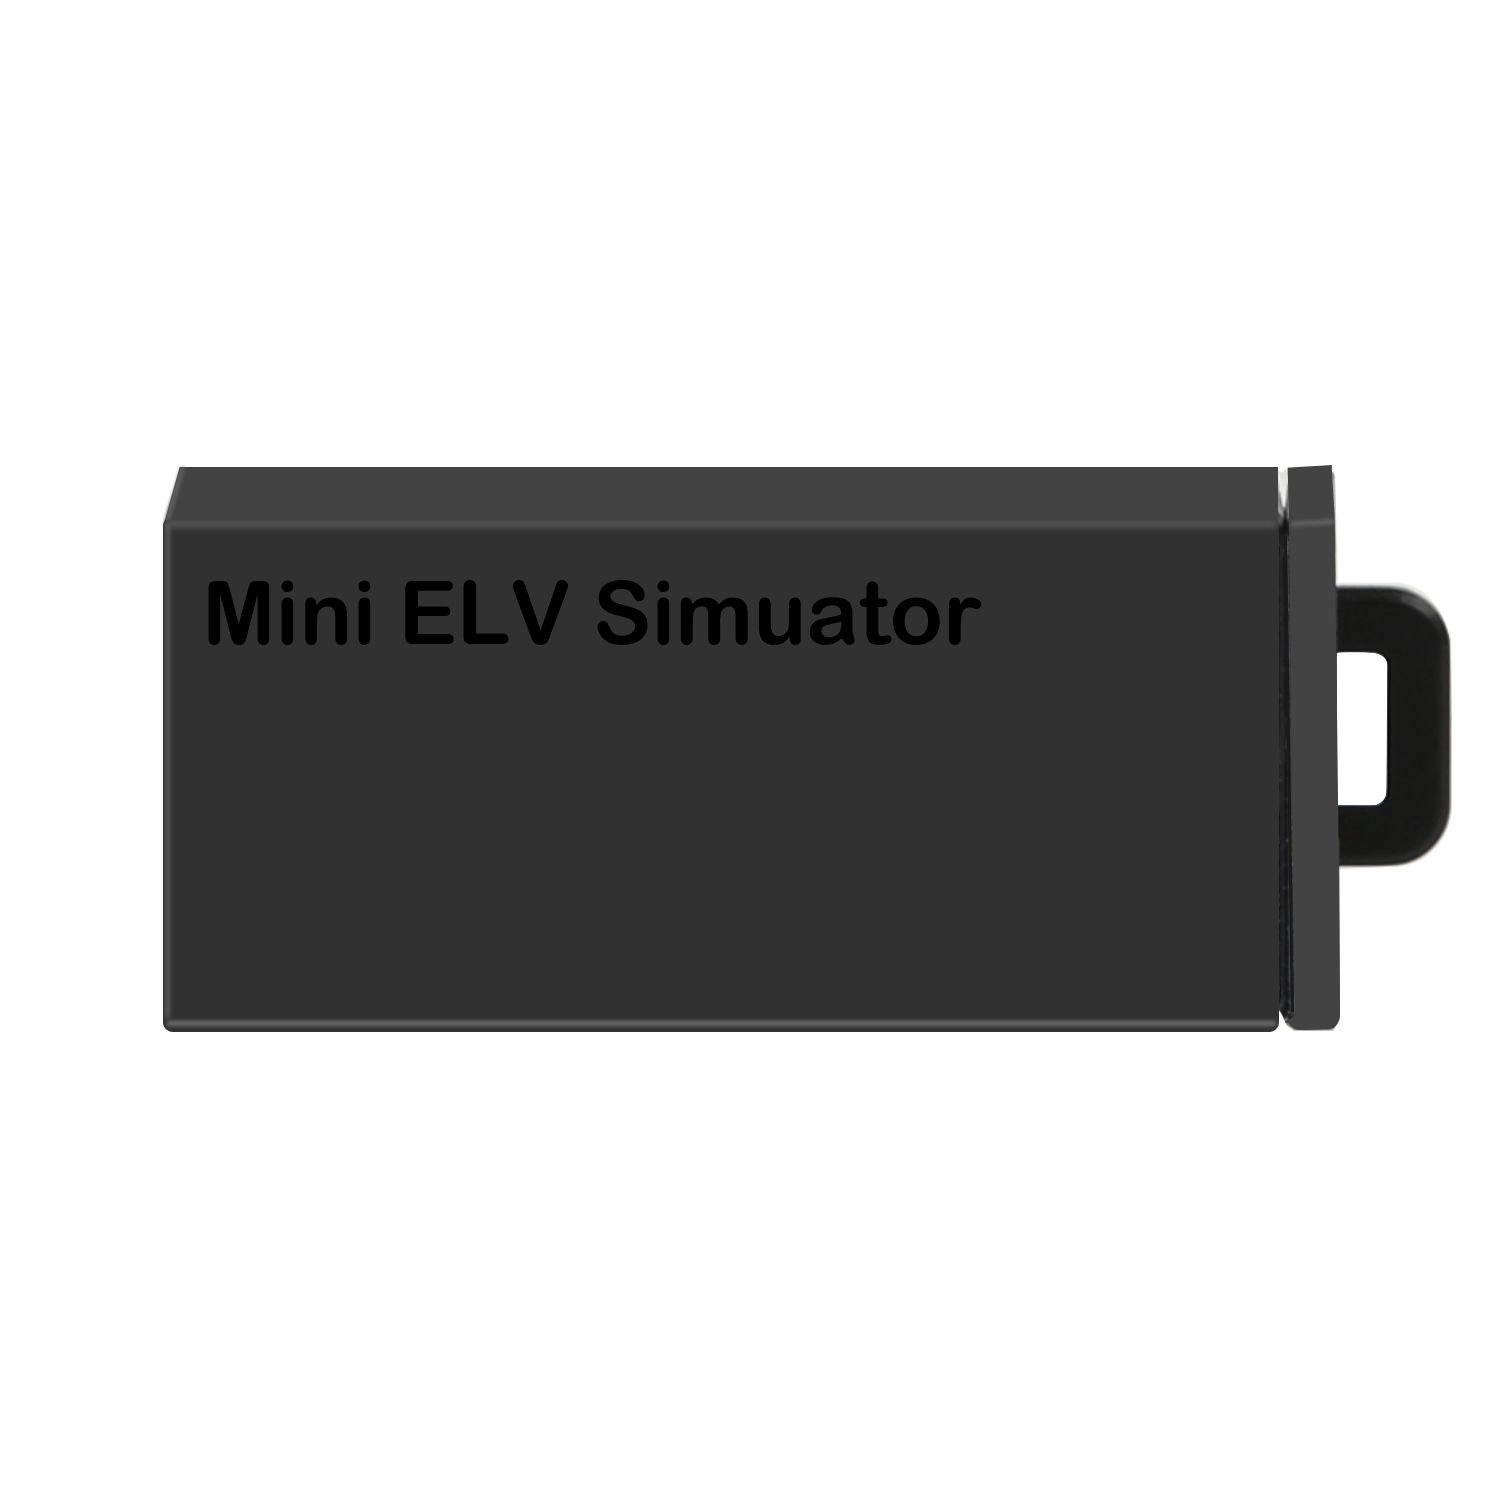 Xhorse VVDI MB Mini ELV Simulator for Benz 204 207 212 5pcs/set